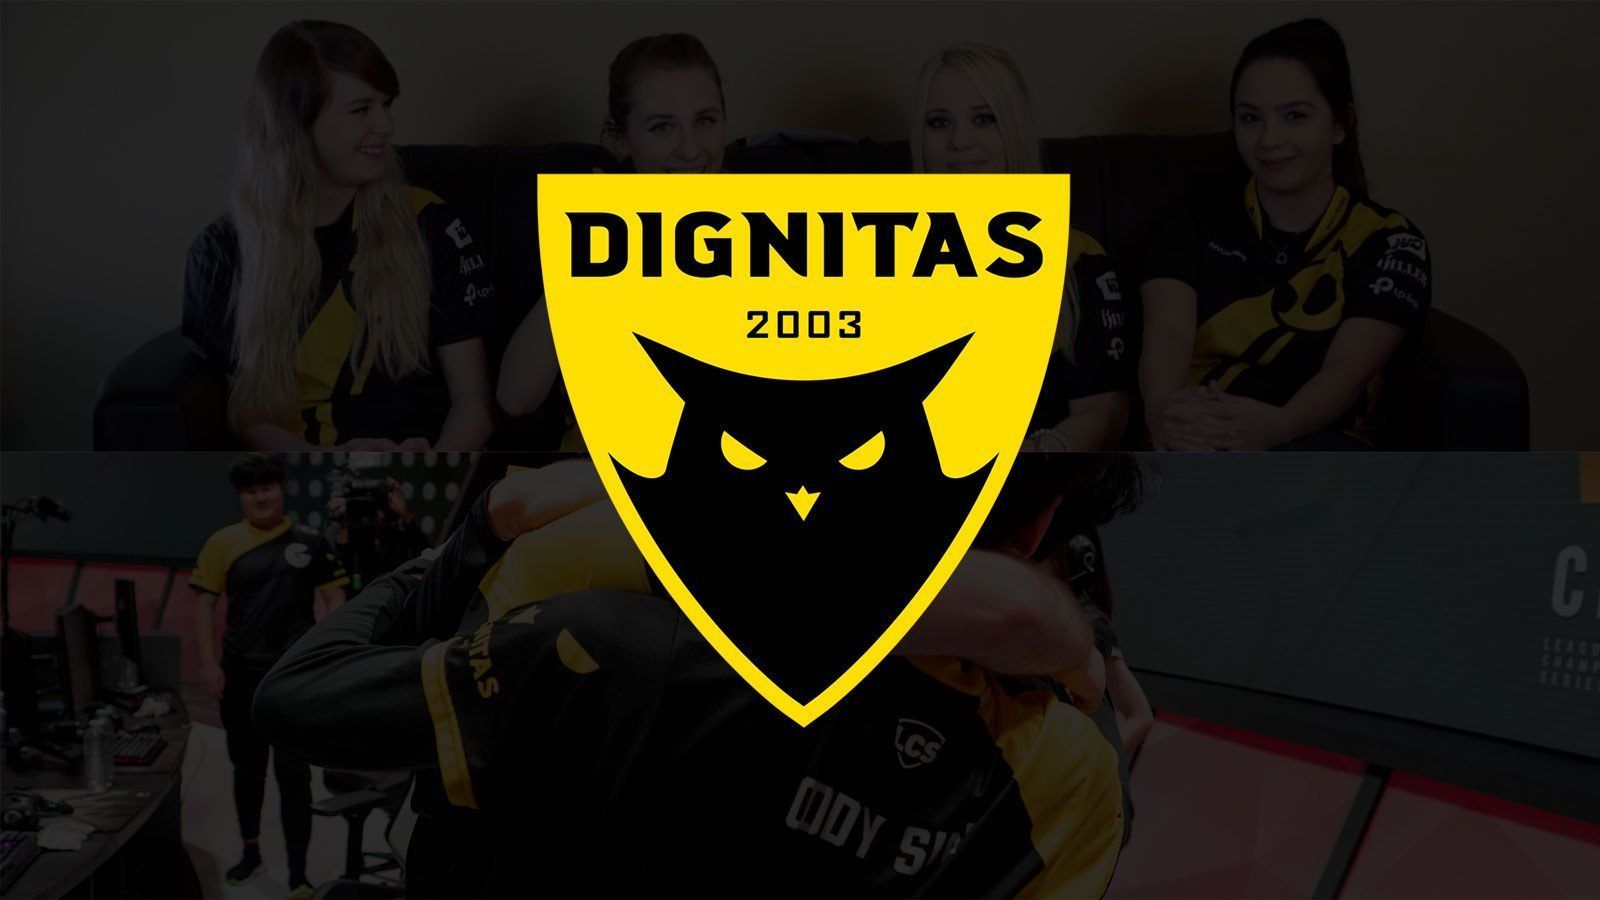 Dignitas 2003. Дигнитас ава КС го. Команда dignitas CS go. Дигнитас игроки.